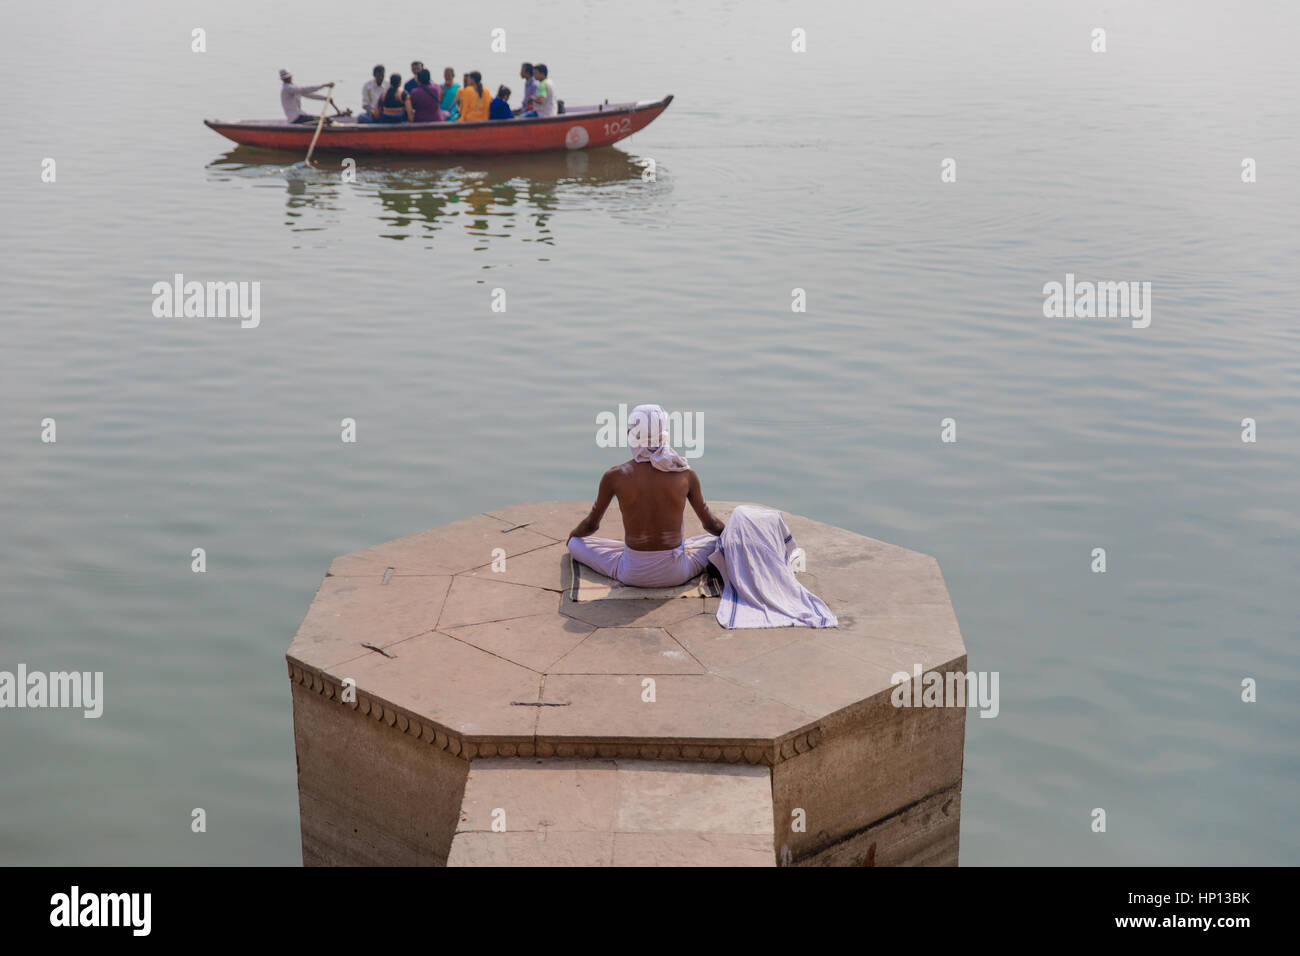 Un homme médite sur le Gange à Varanasi, une des villes les plus saintes de l'Inde. Varanasi est une destination populaire pour les touristes qui fréquentent les écoles de yoga. Banque D'Images